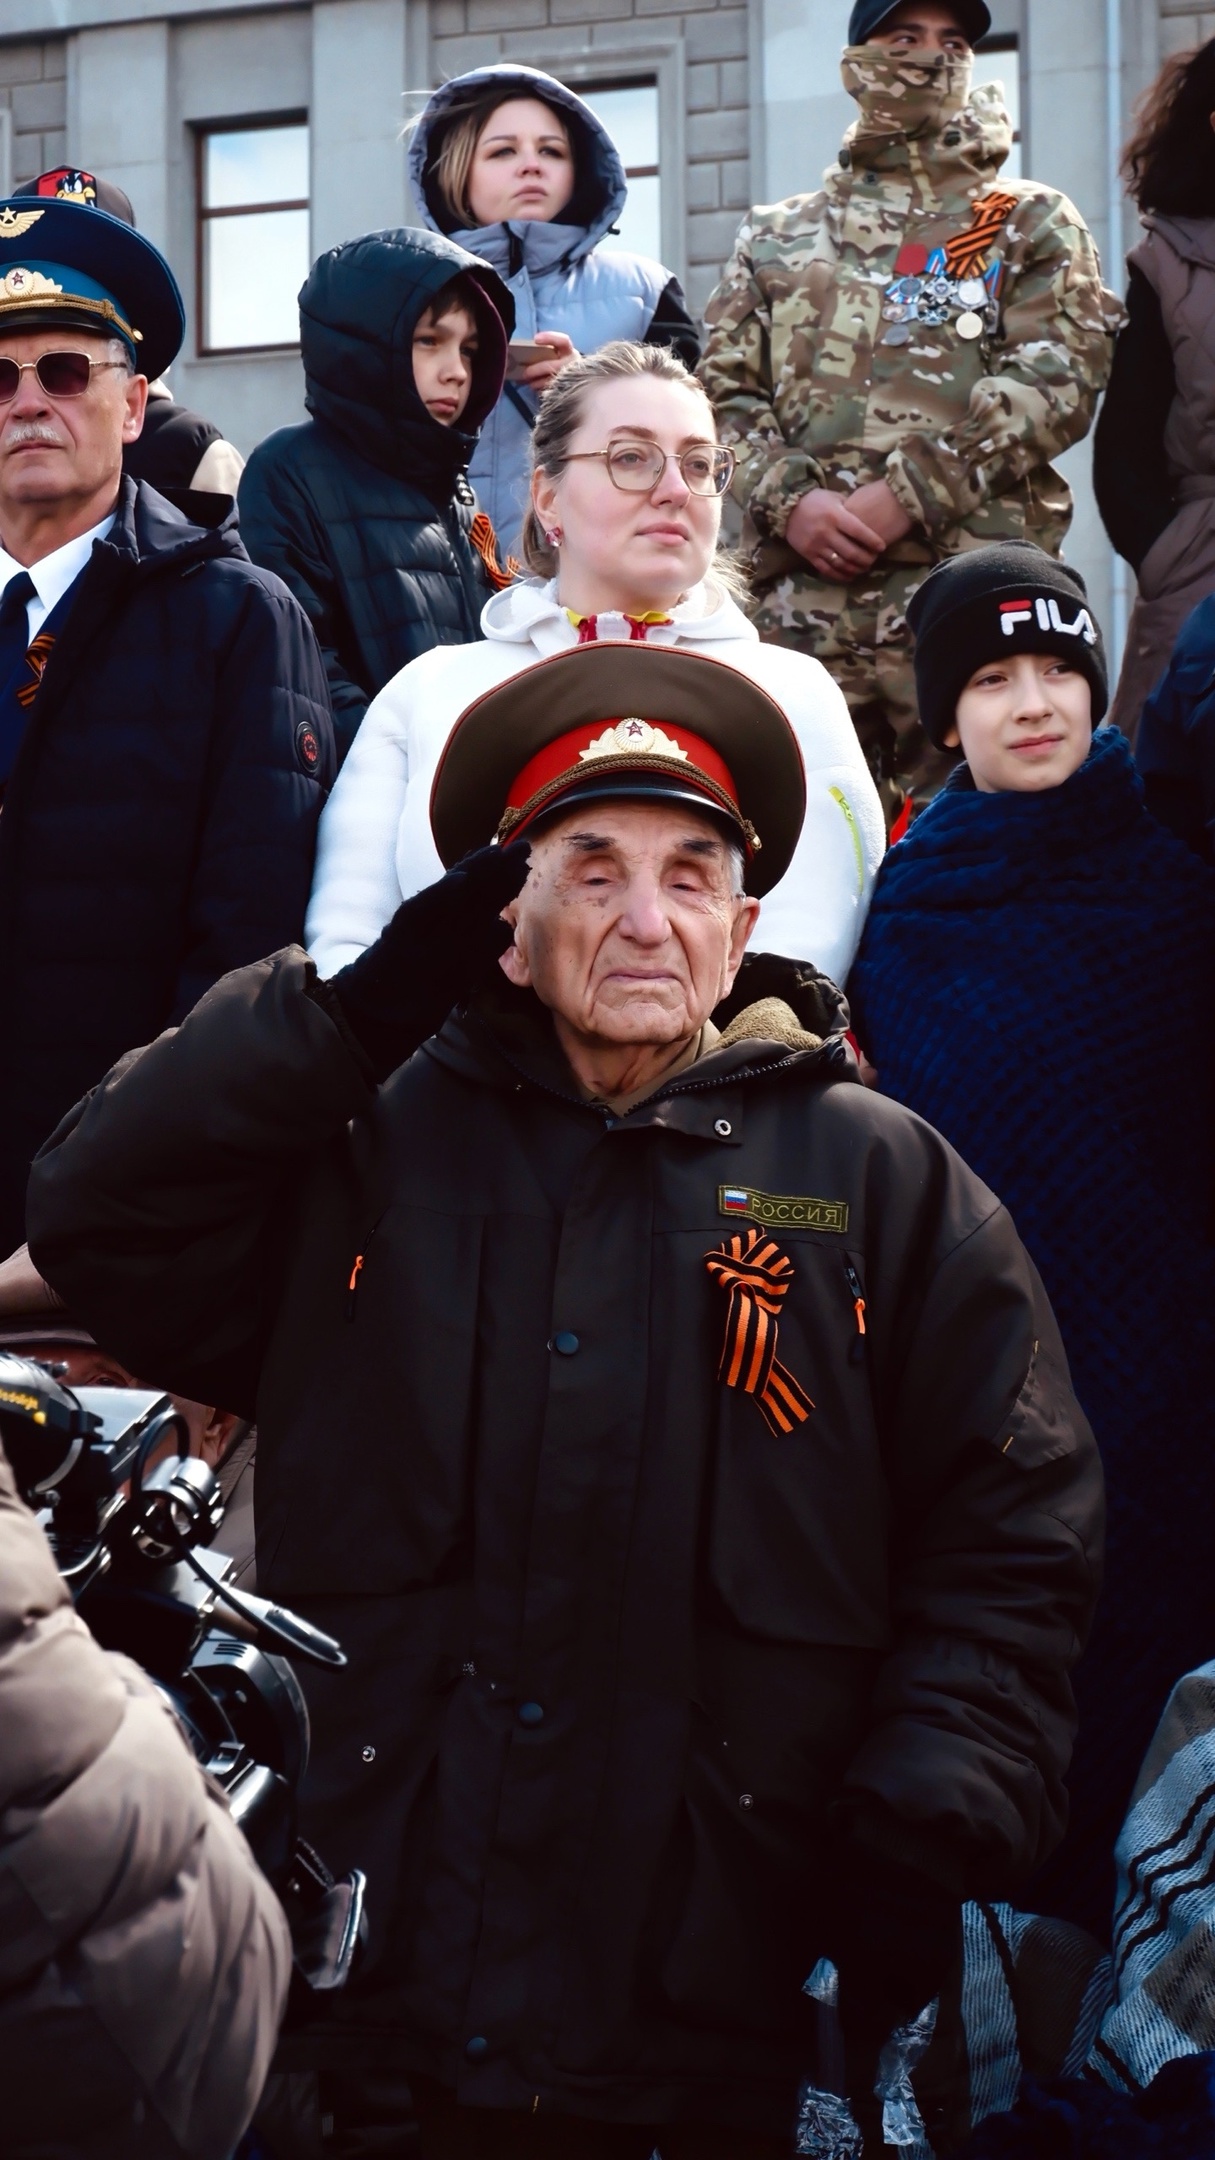  Хор жён героев, легендарный Т-34 и строгий контроль: фоторепортаж с парада Победы в Самаре 